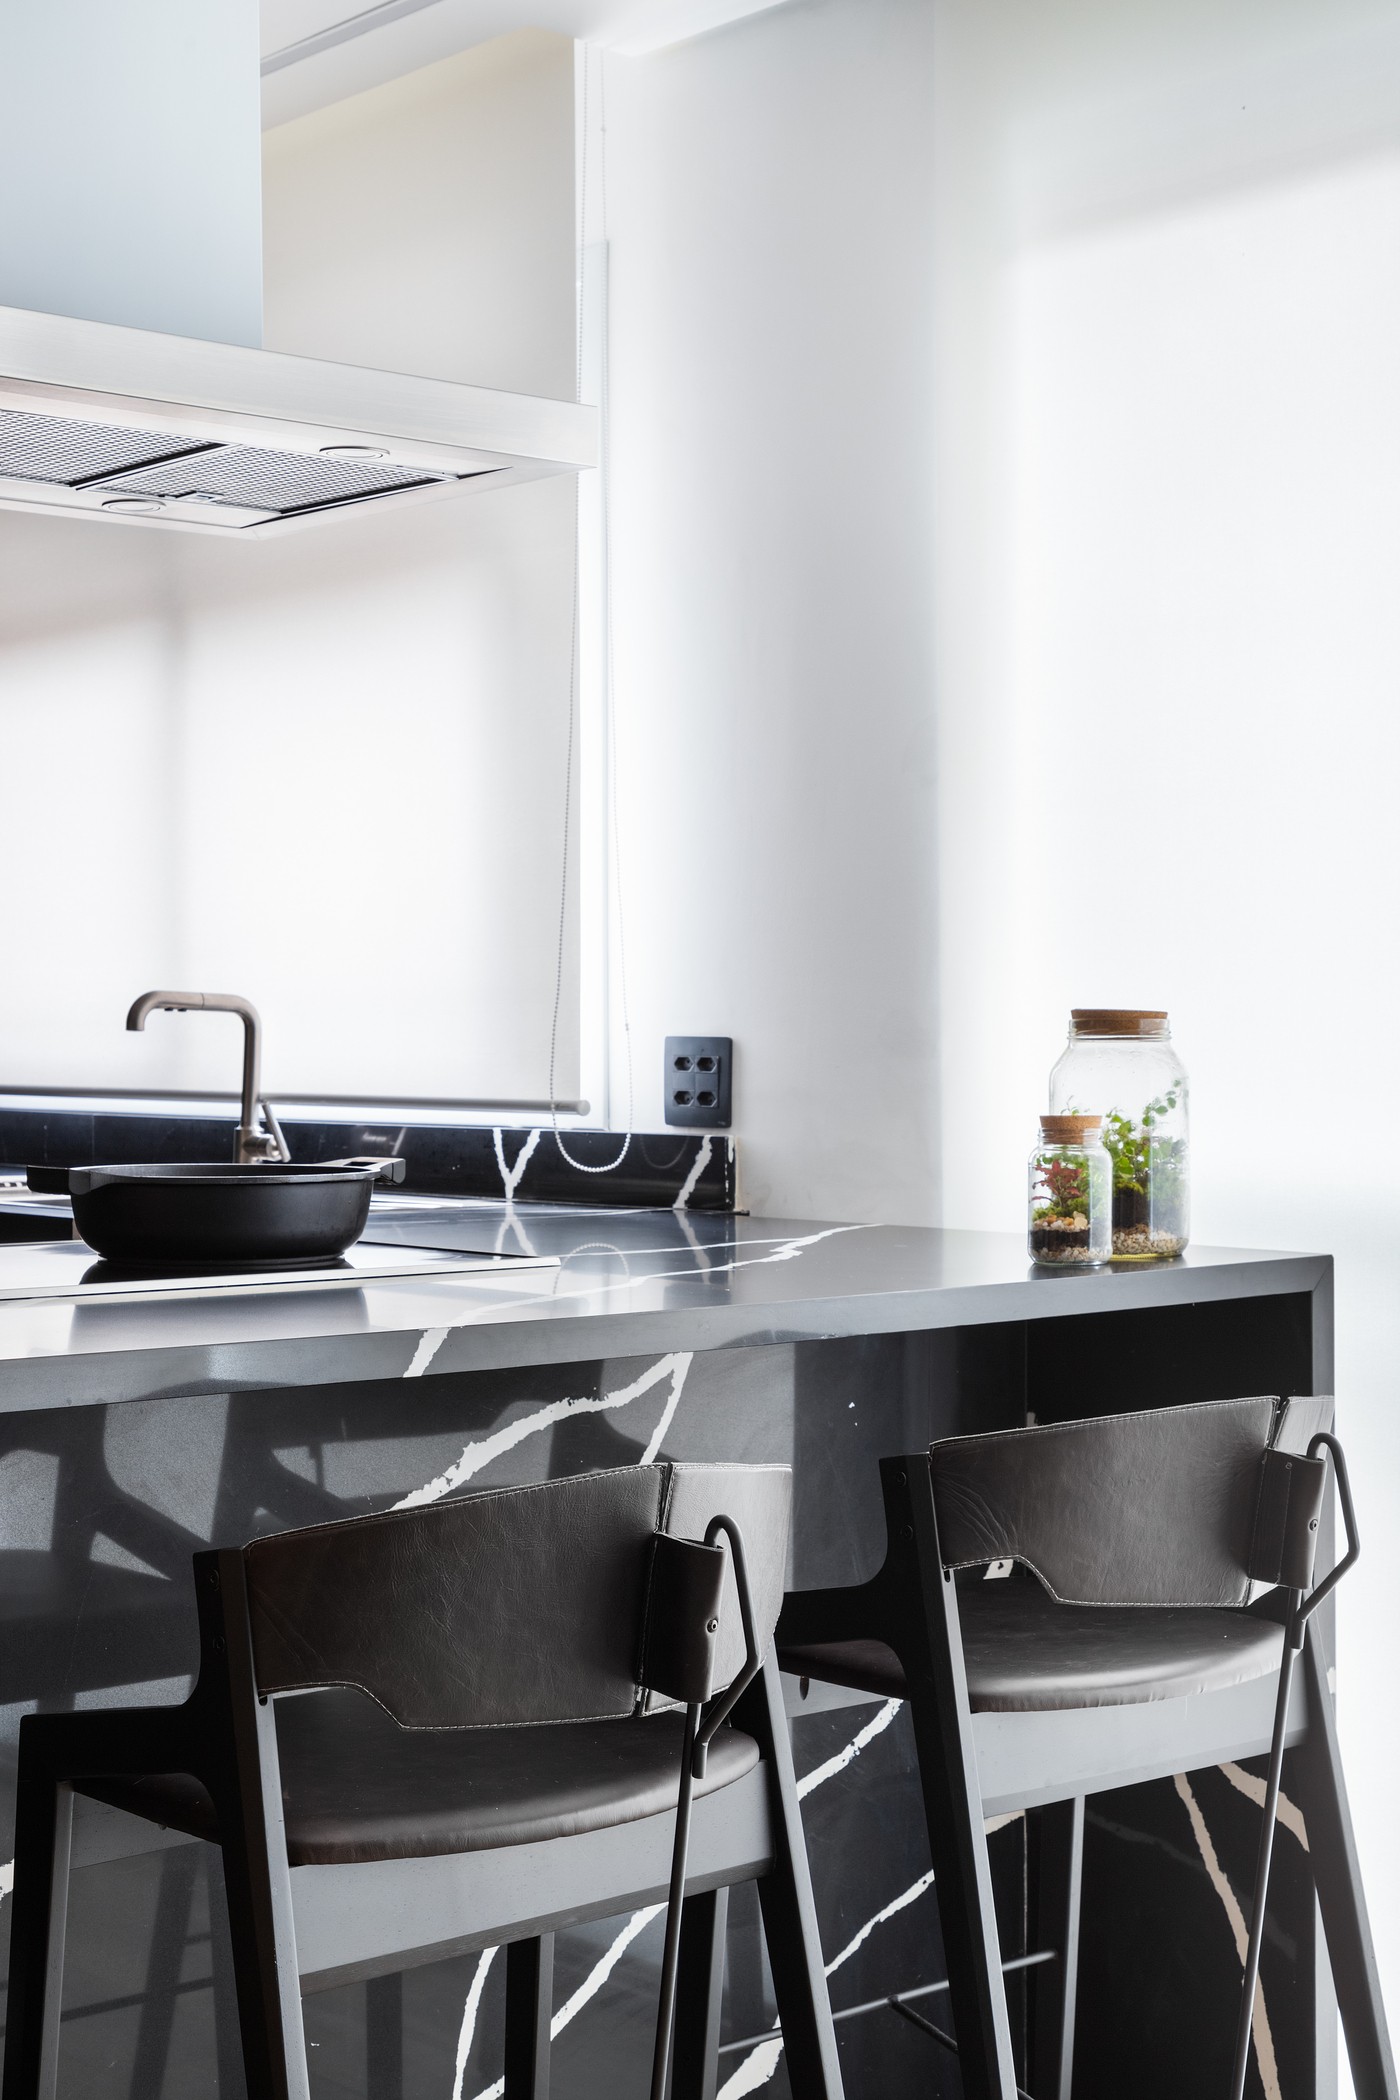 Décor do dia: cozinha aberta com marcenaria preta e bancada de apoio (Foto: Fernando Crescenti)